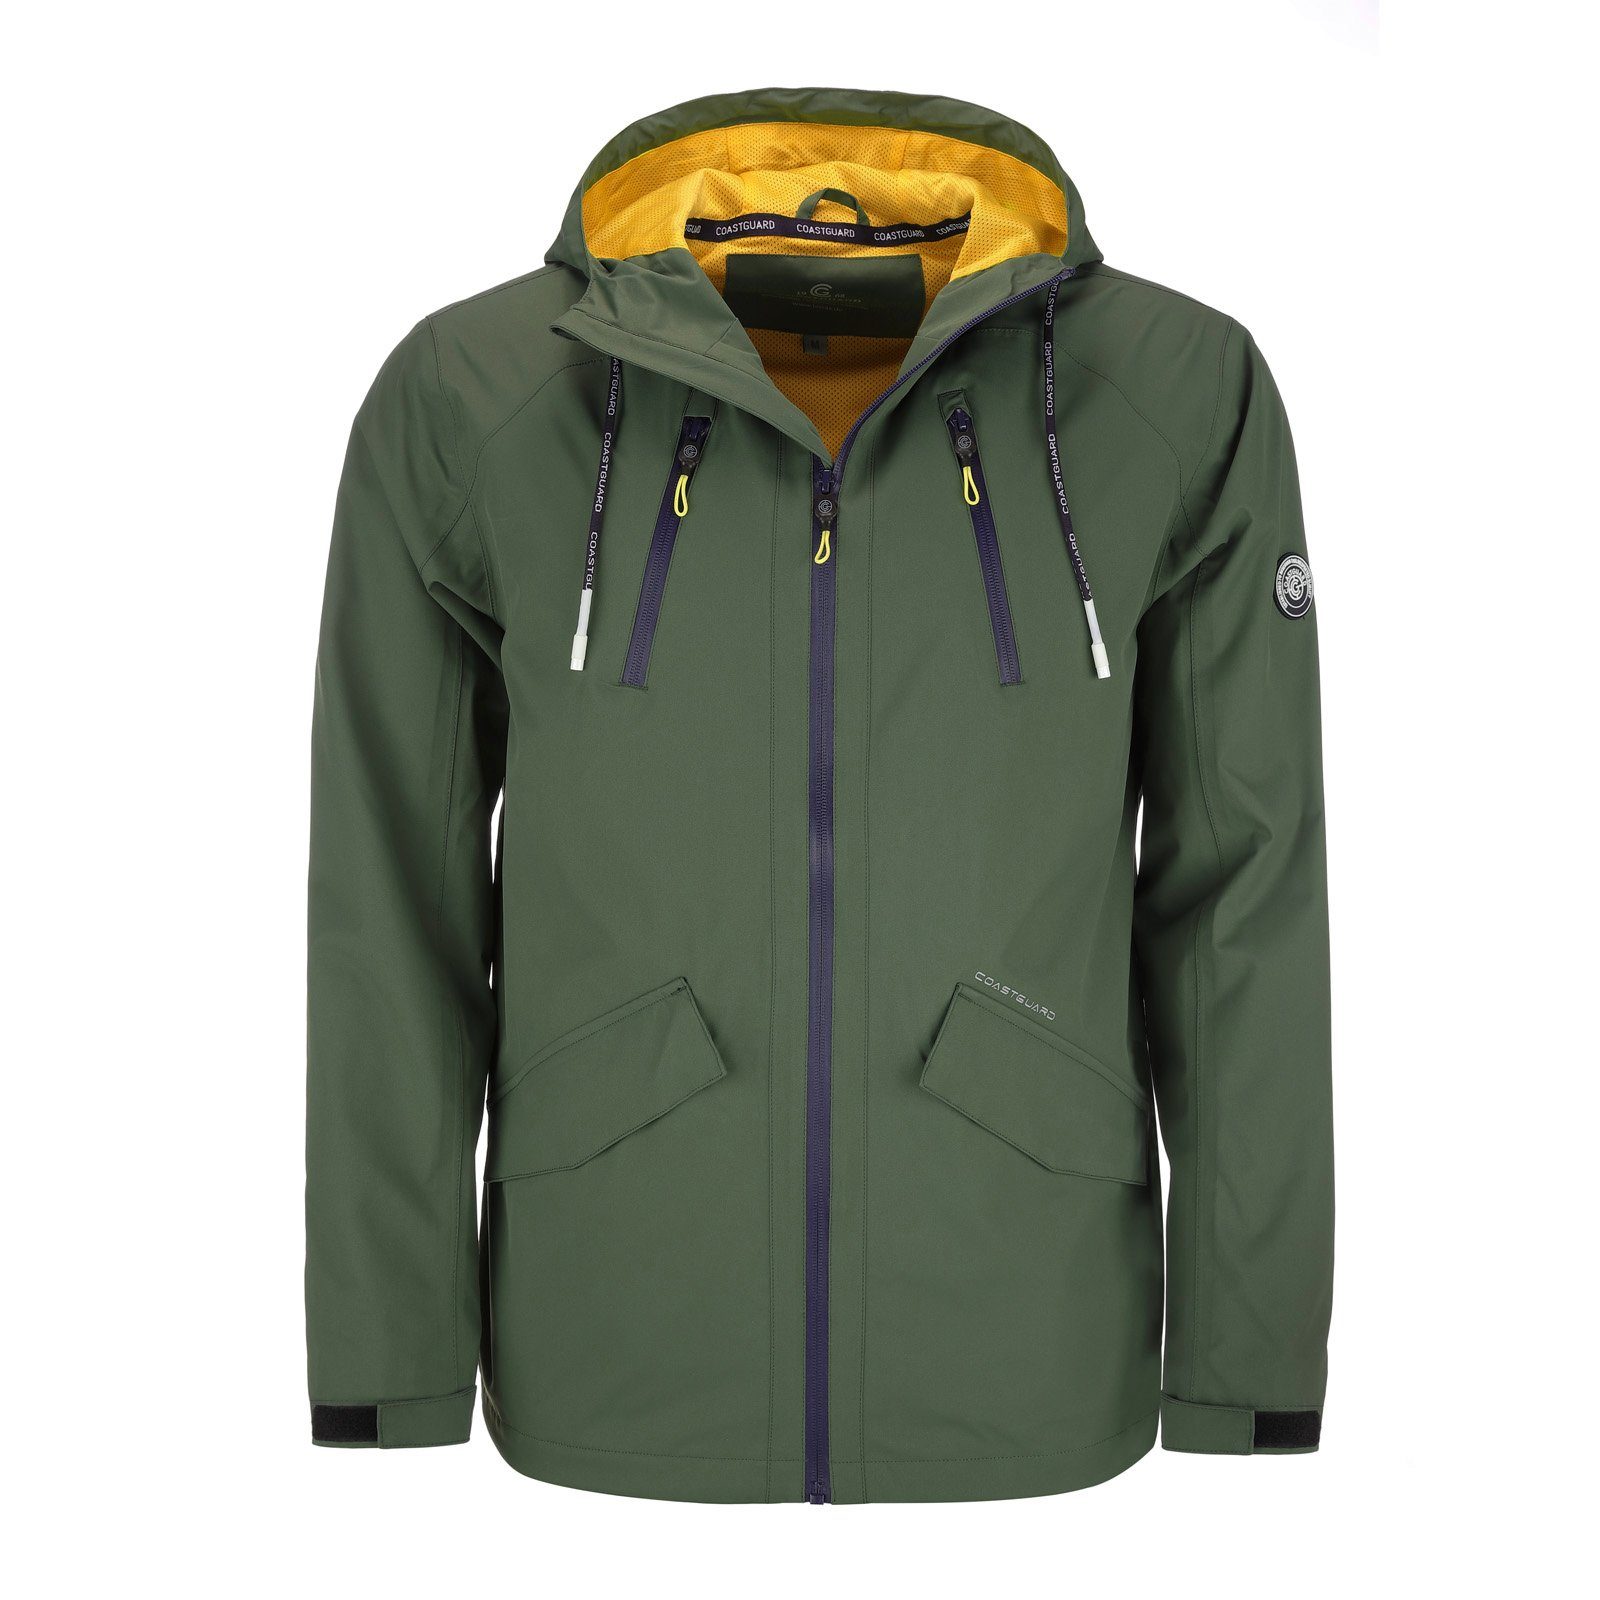 Coastguard Funktionsjacke Herren Outdoor-Jacke leichte Qualität mit Kapuze wasserdicht dunkelgrün